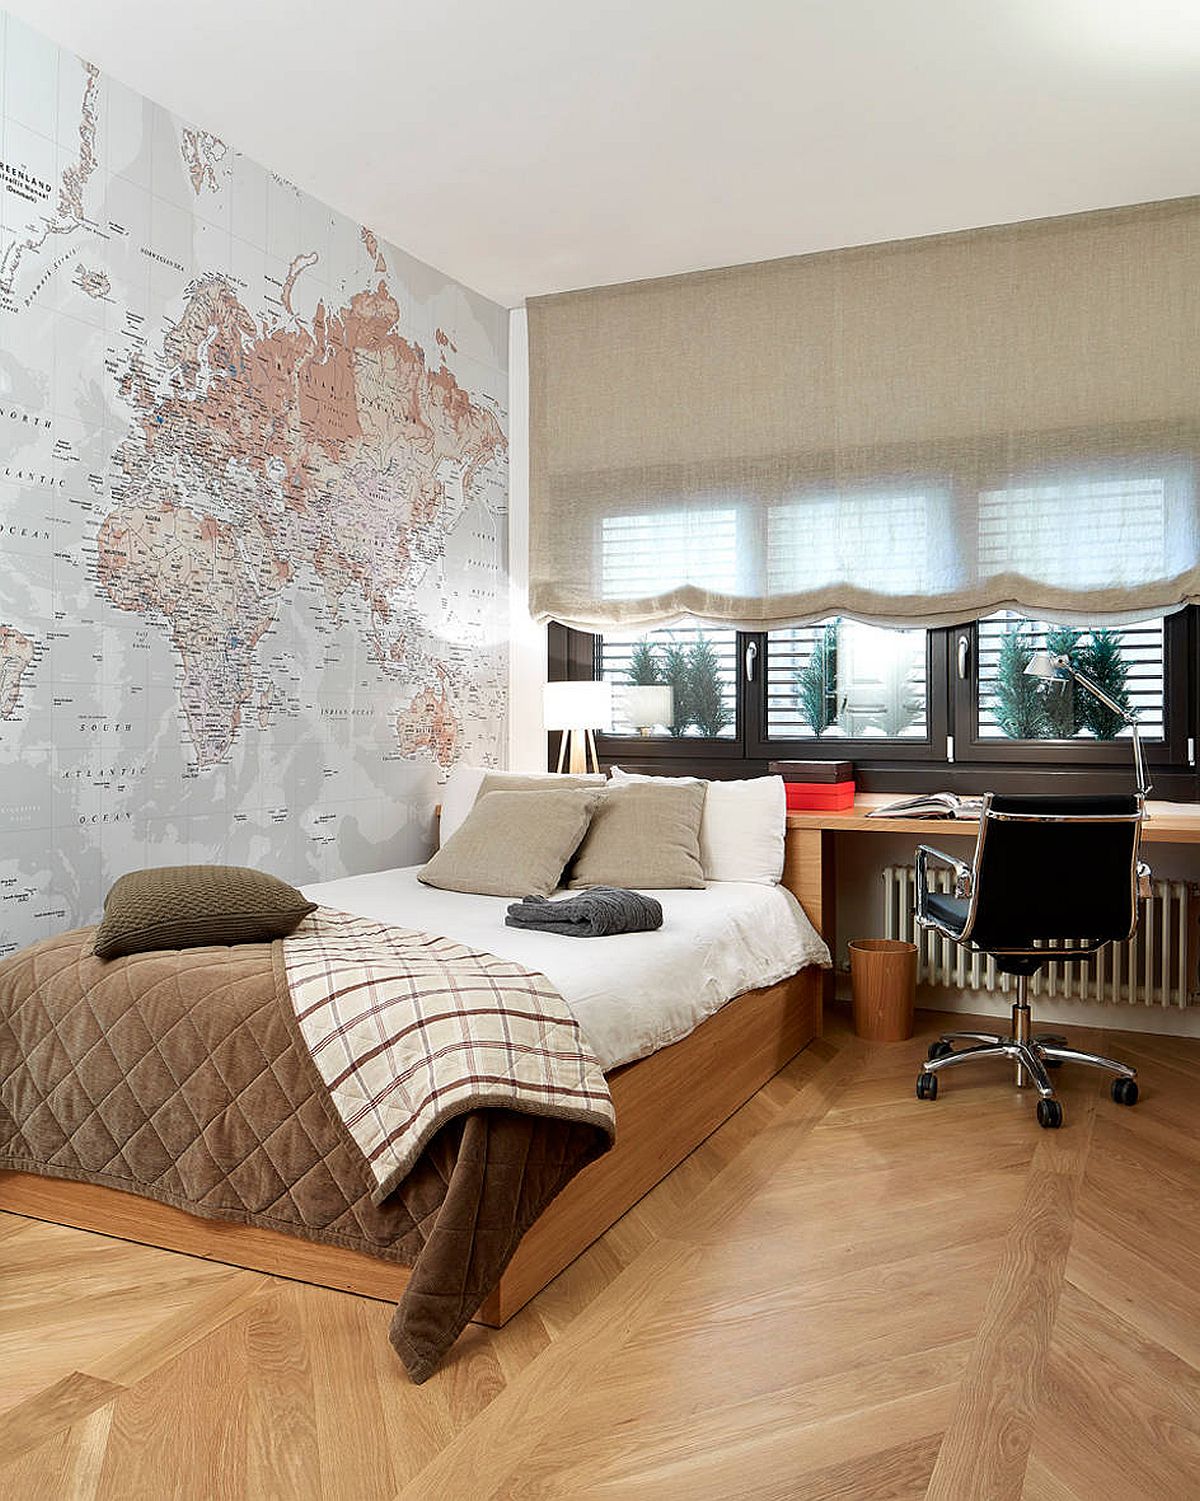 Hình ảnh một góc phòng ngủ hiện đại với bản đồ bao trọn cả bức tường